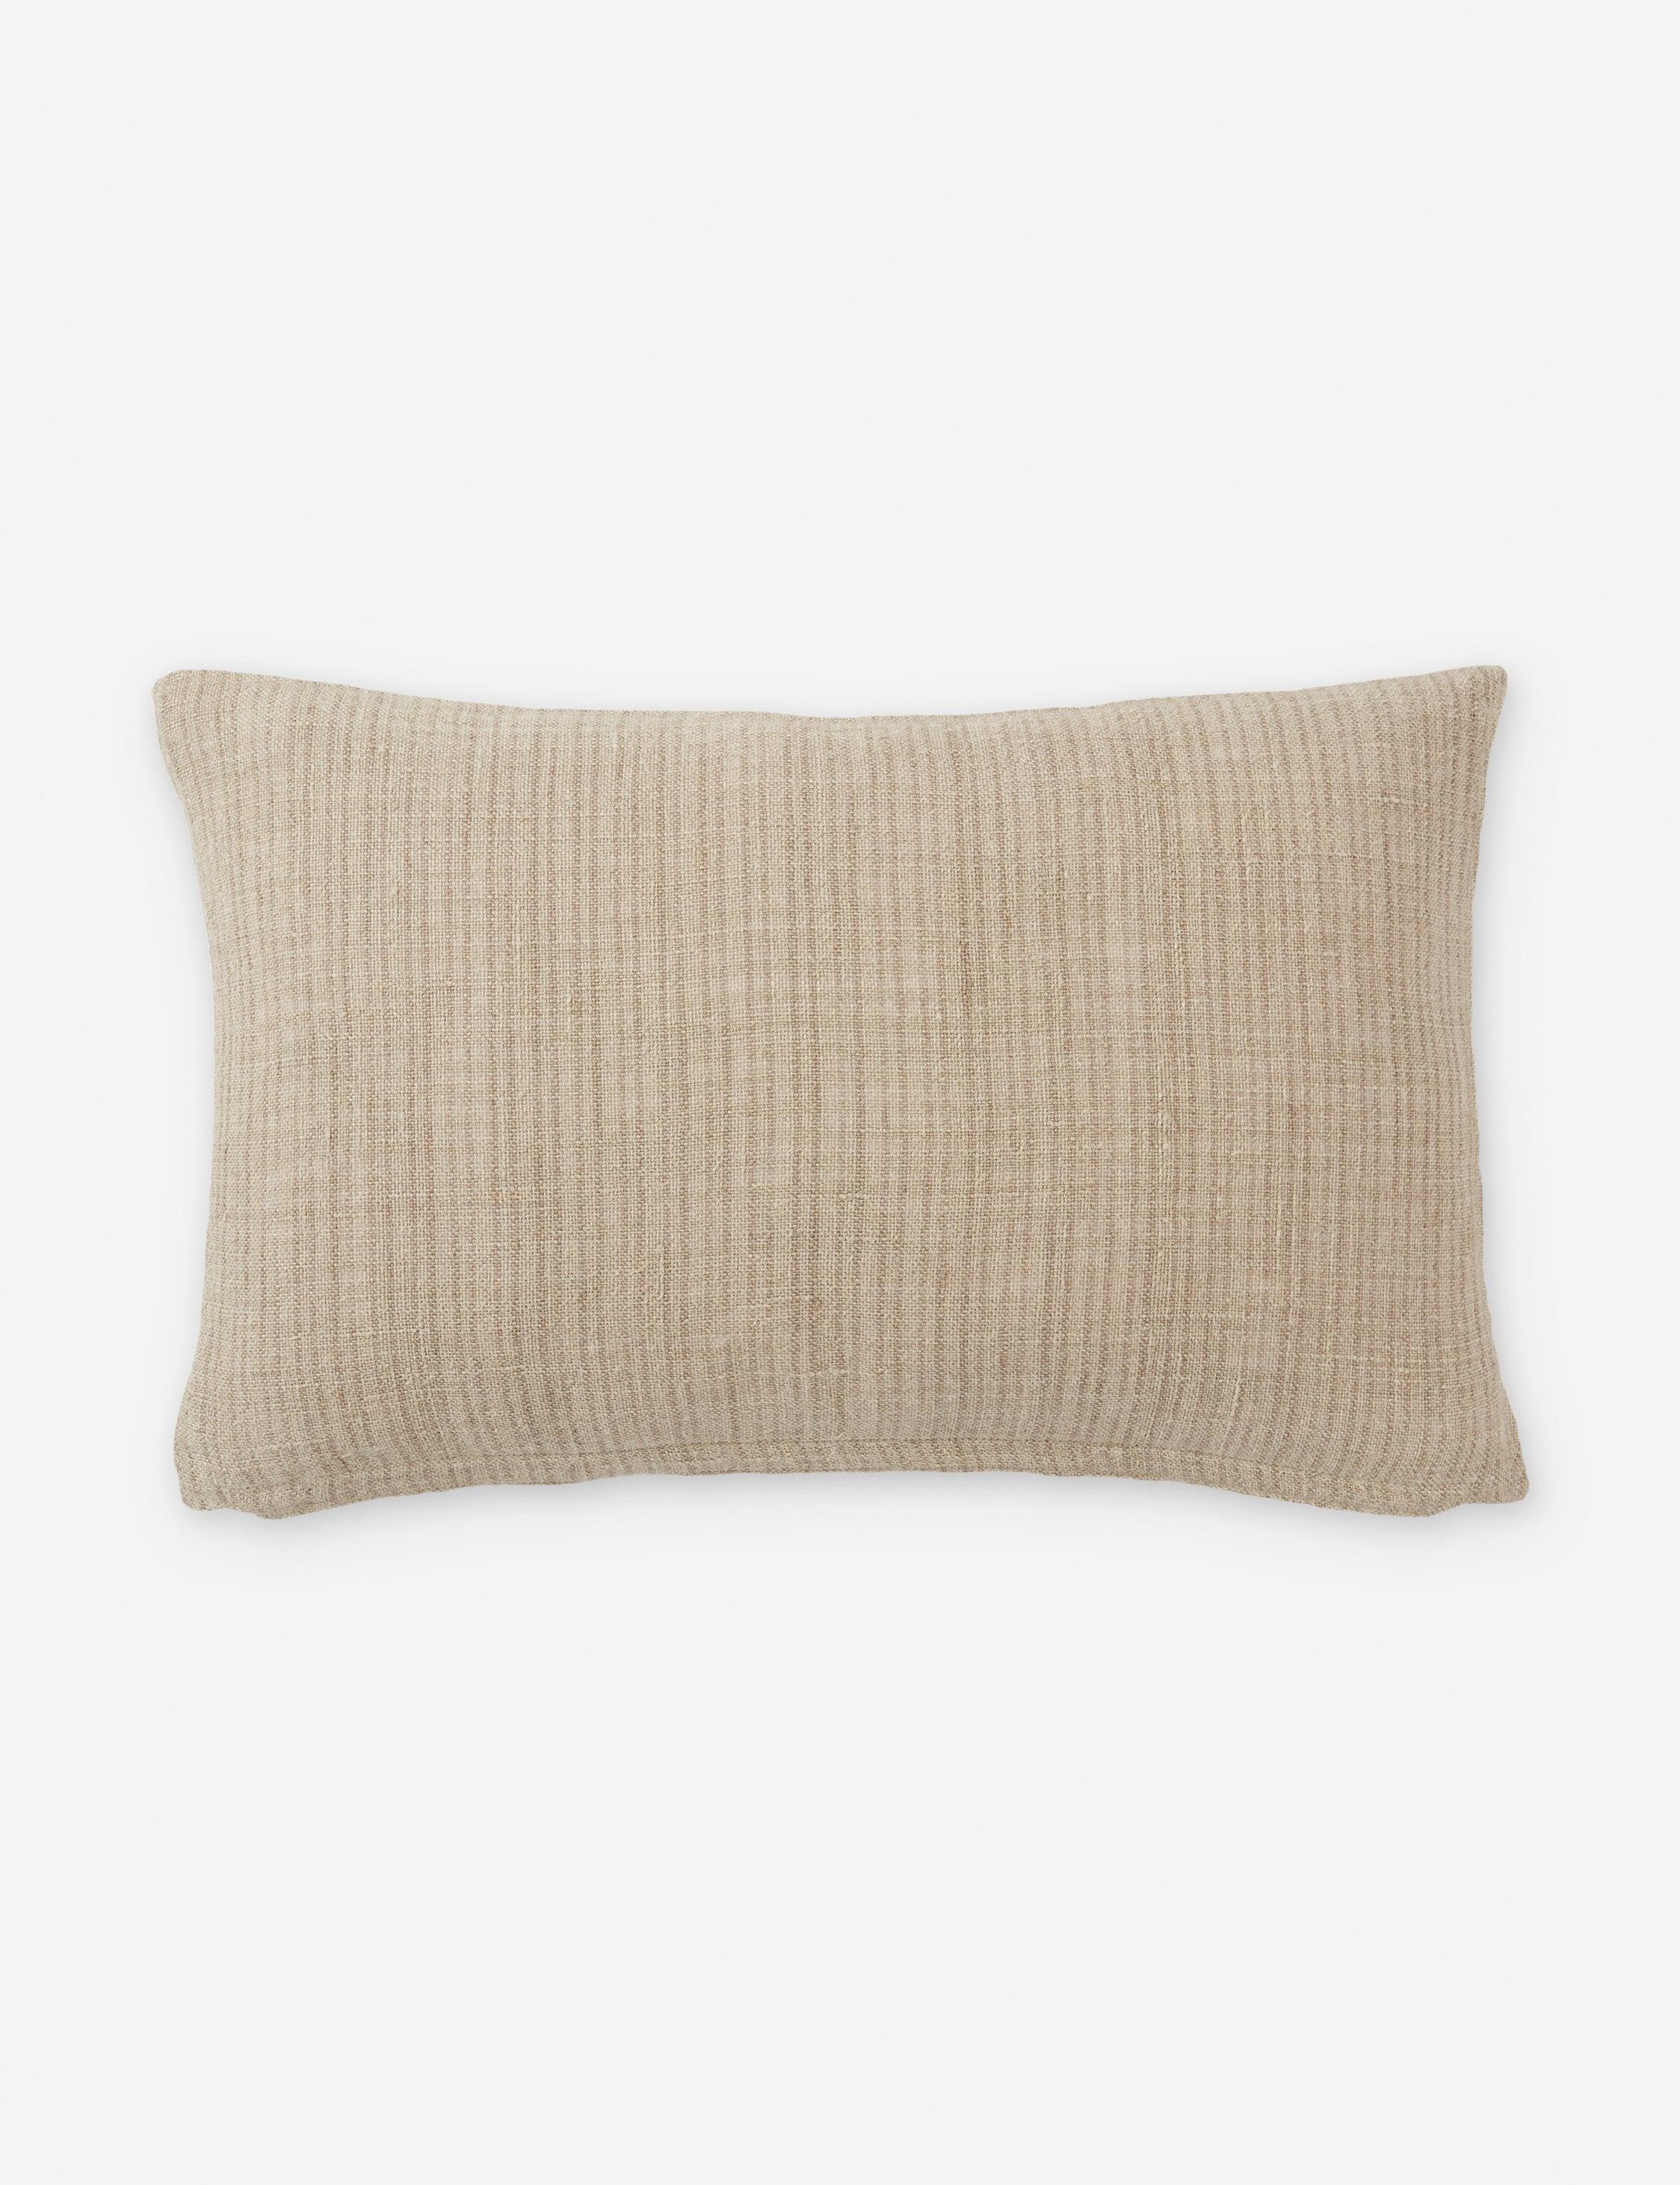 Asger Earthy Tones Reversible Lumbar Pillow in Light Brown/Cream